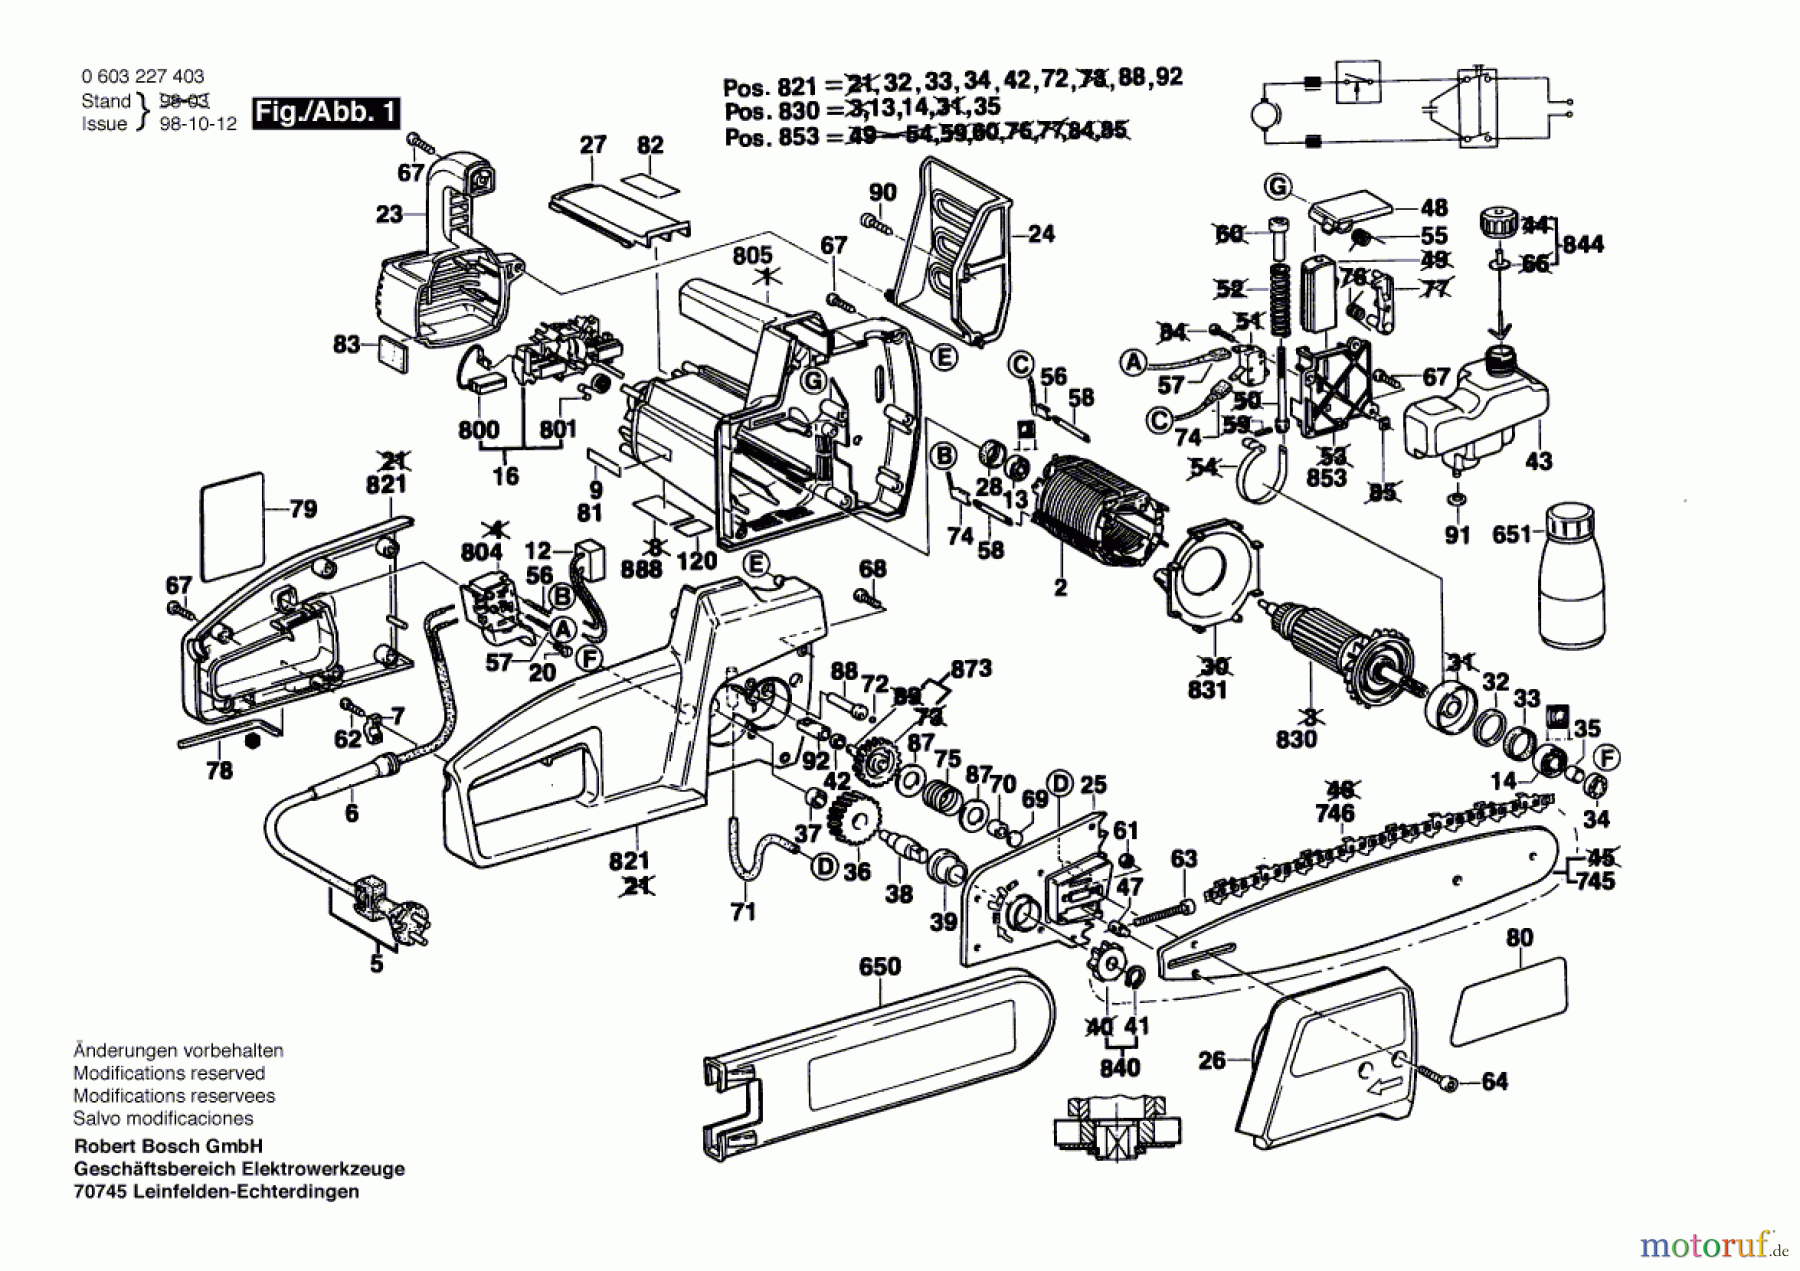  Bosch Werkzeug Vorsatz-Kettensäge PKE 30 B Seite 1